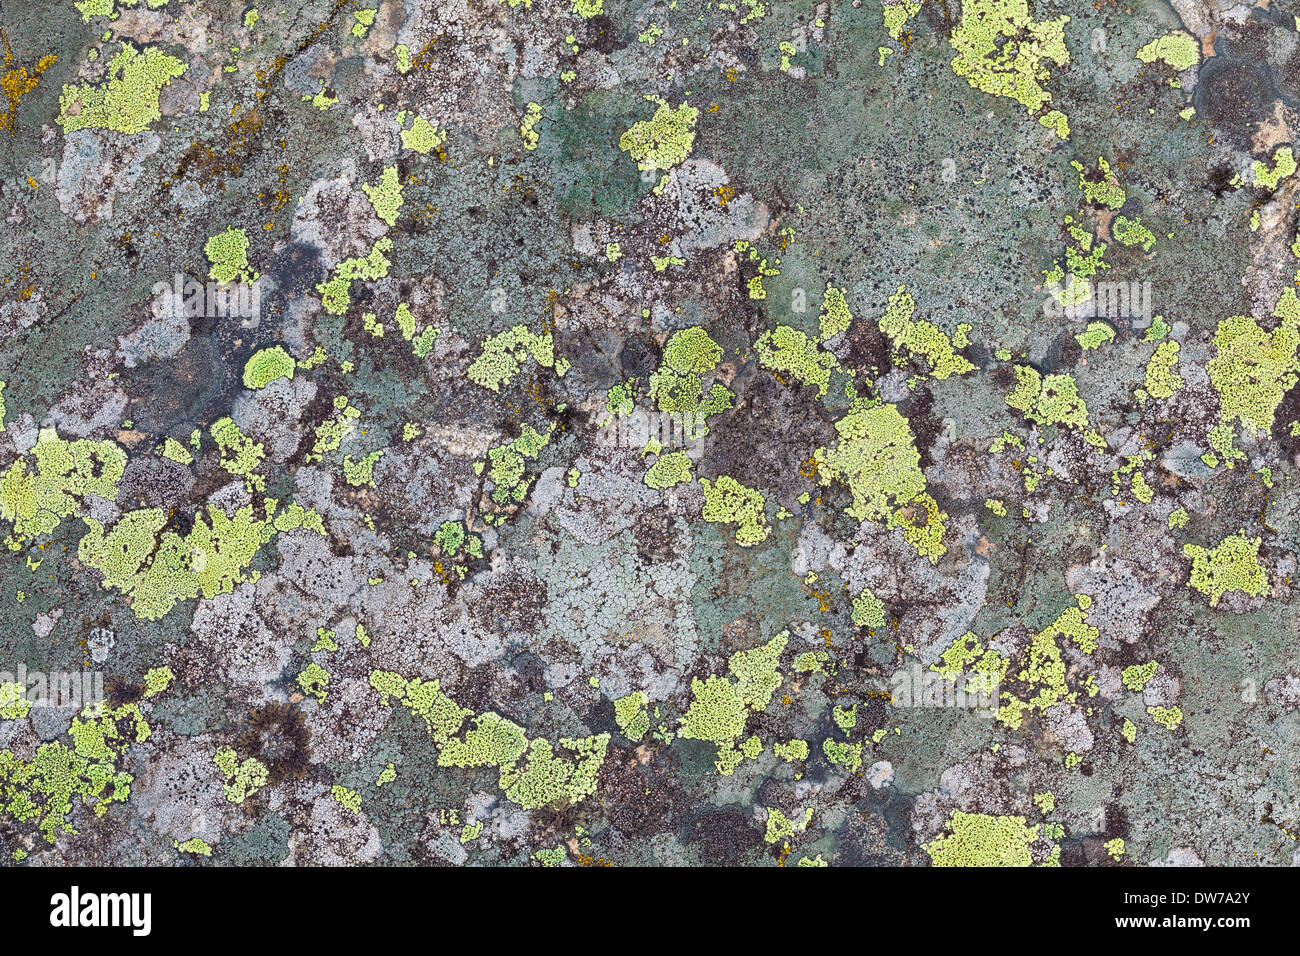 Lichen textures Stock Photo